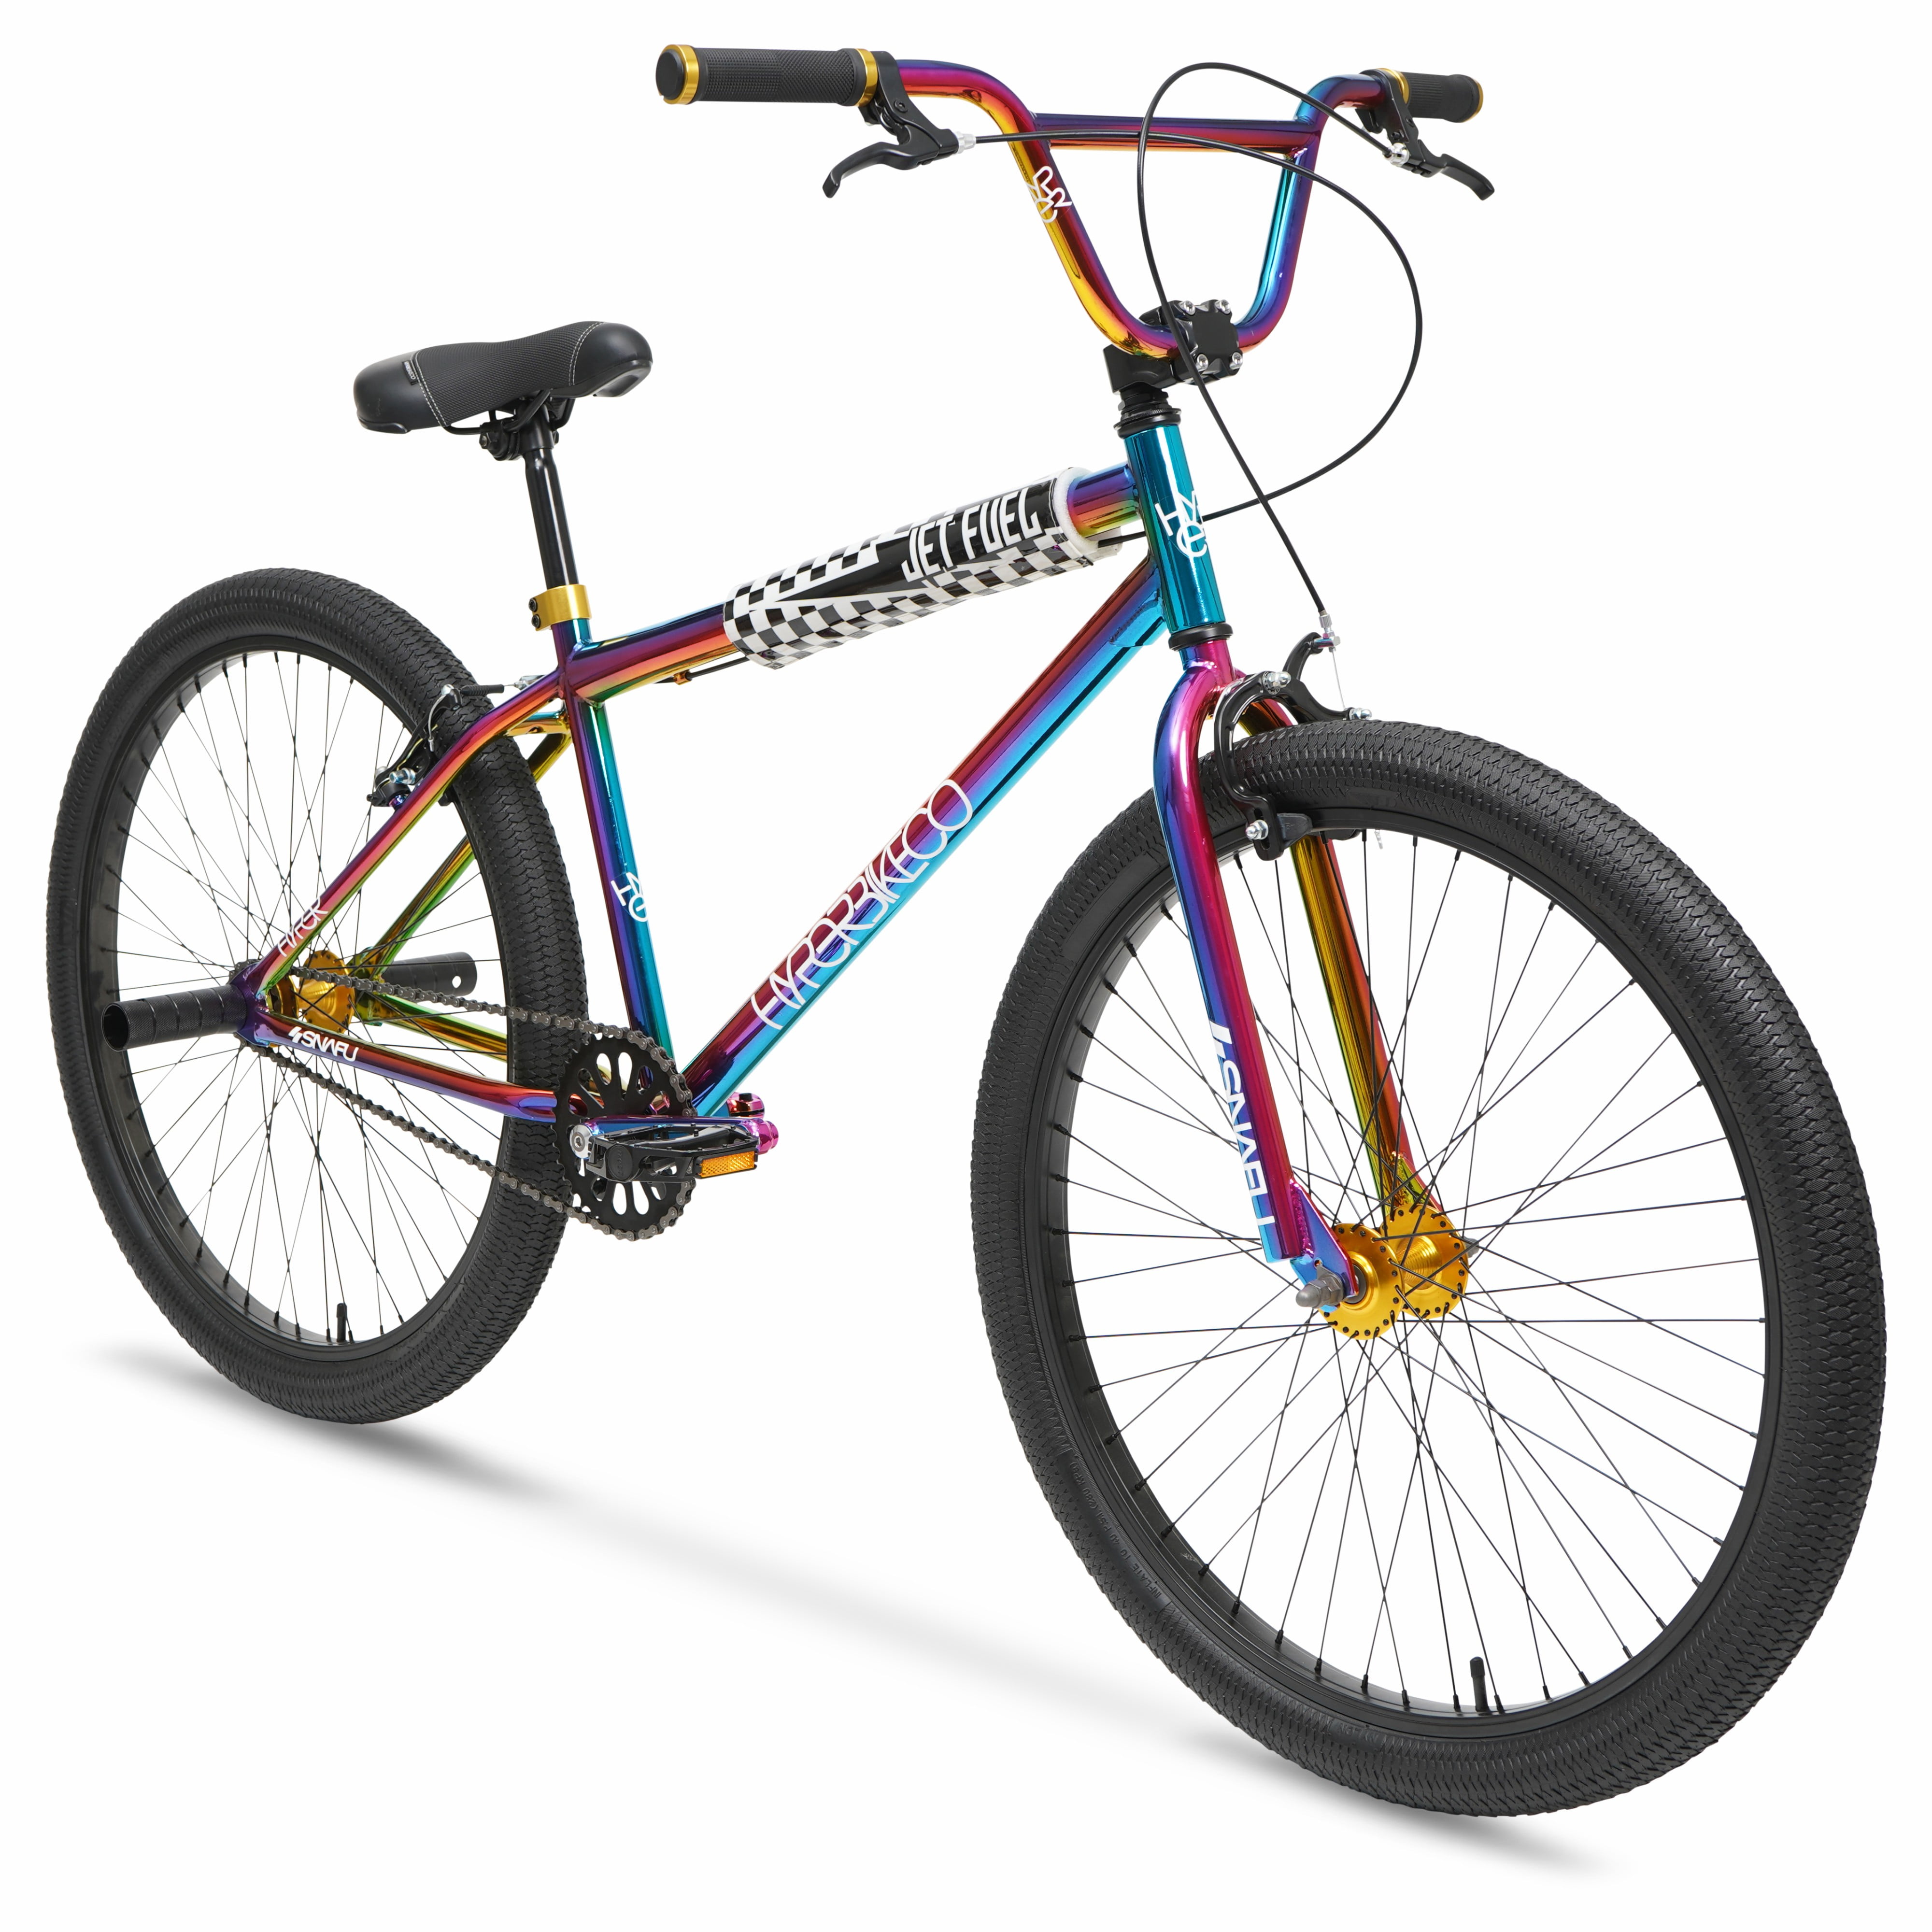 Accumulatie Waarschuwing herstel Hyper Bicycles Adult 26" Multi-Color BMX Bike with Custom Jet Fuel Paint -  Walmart.com